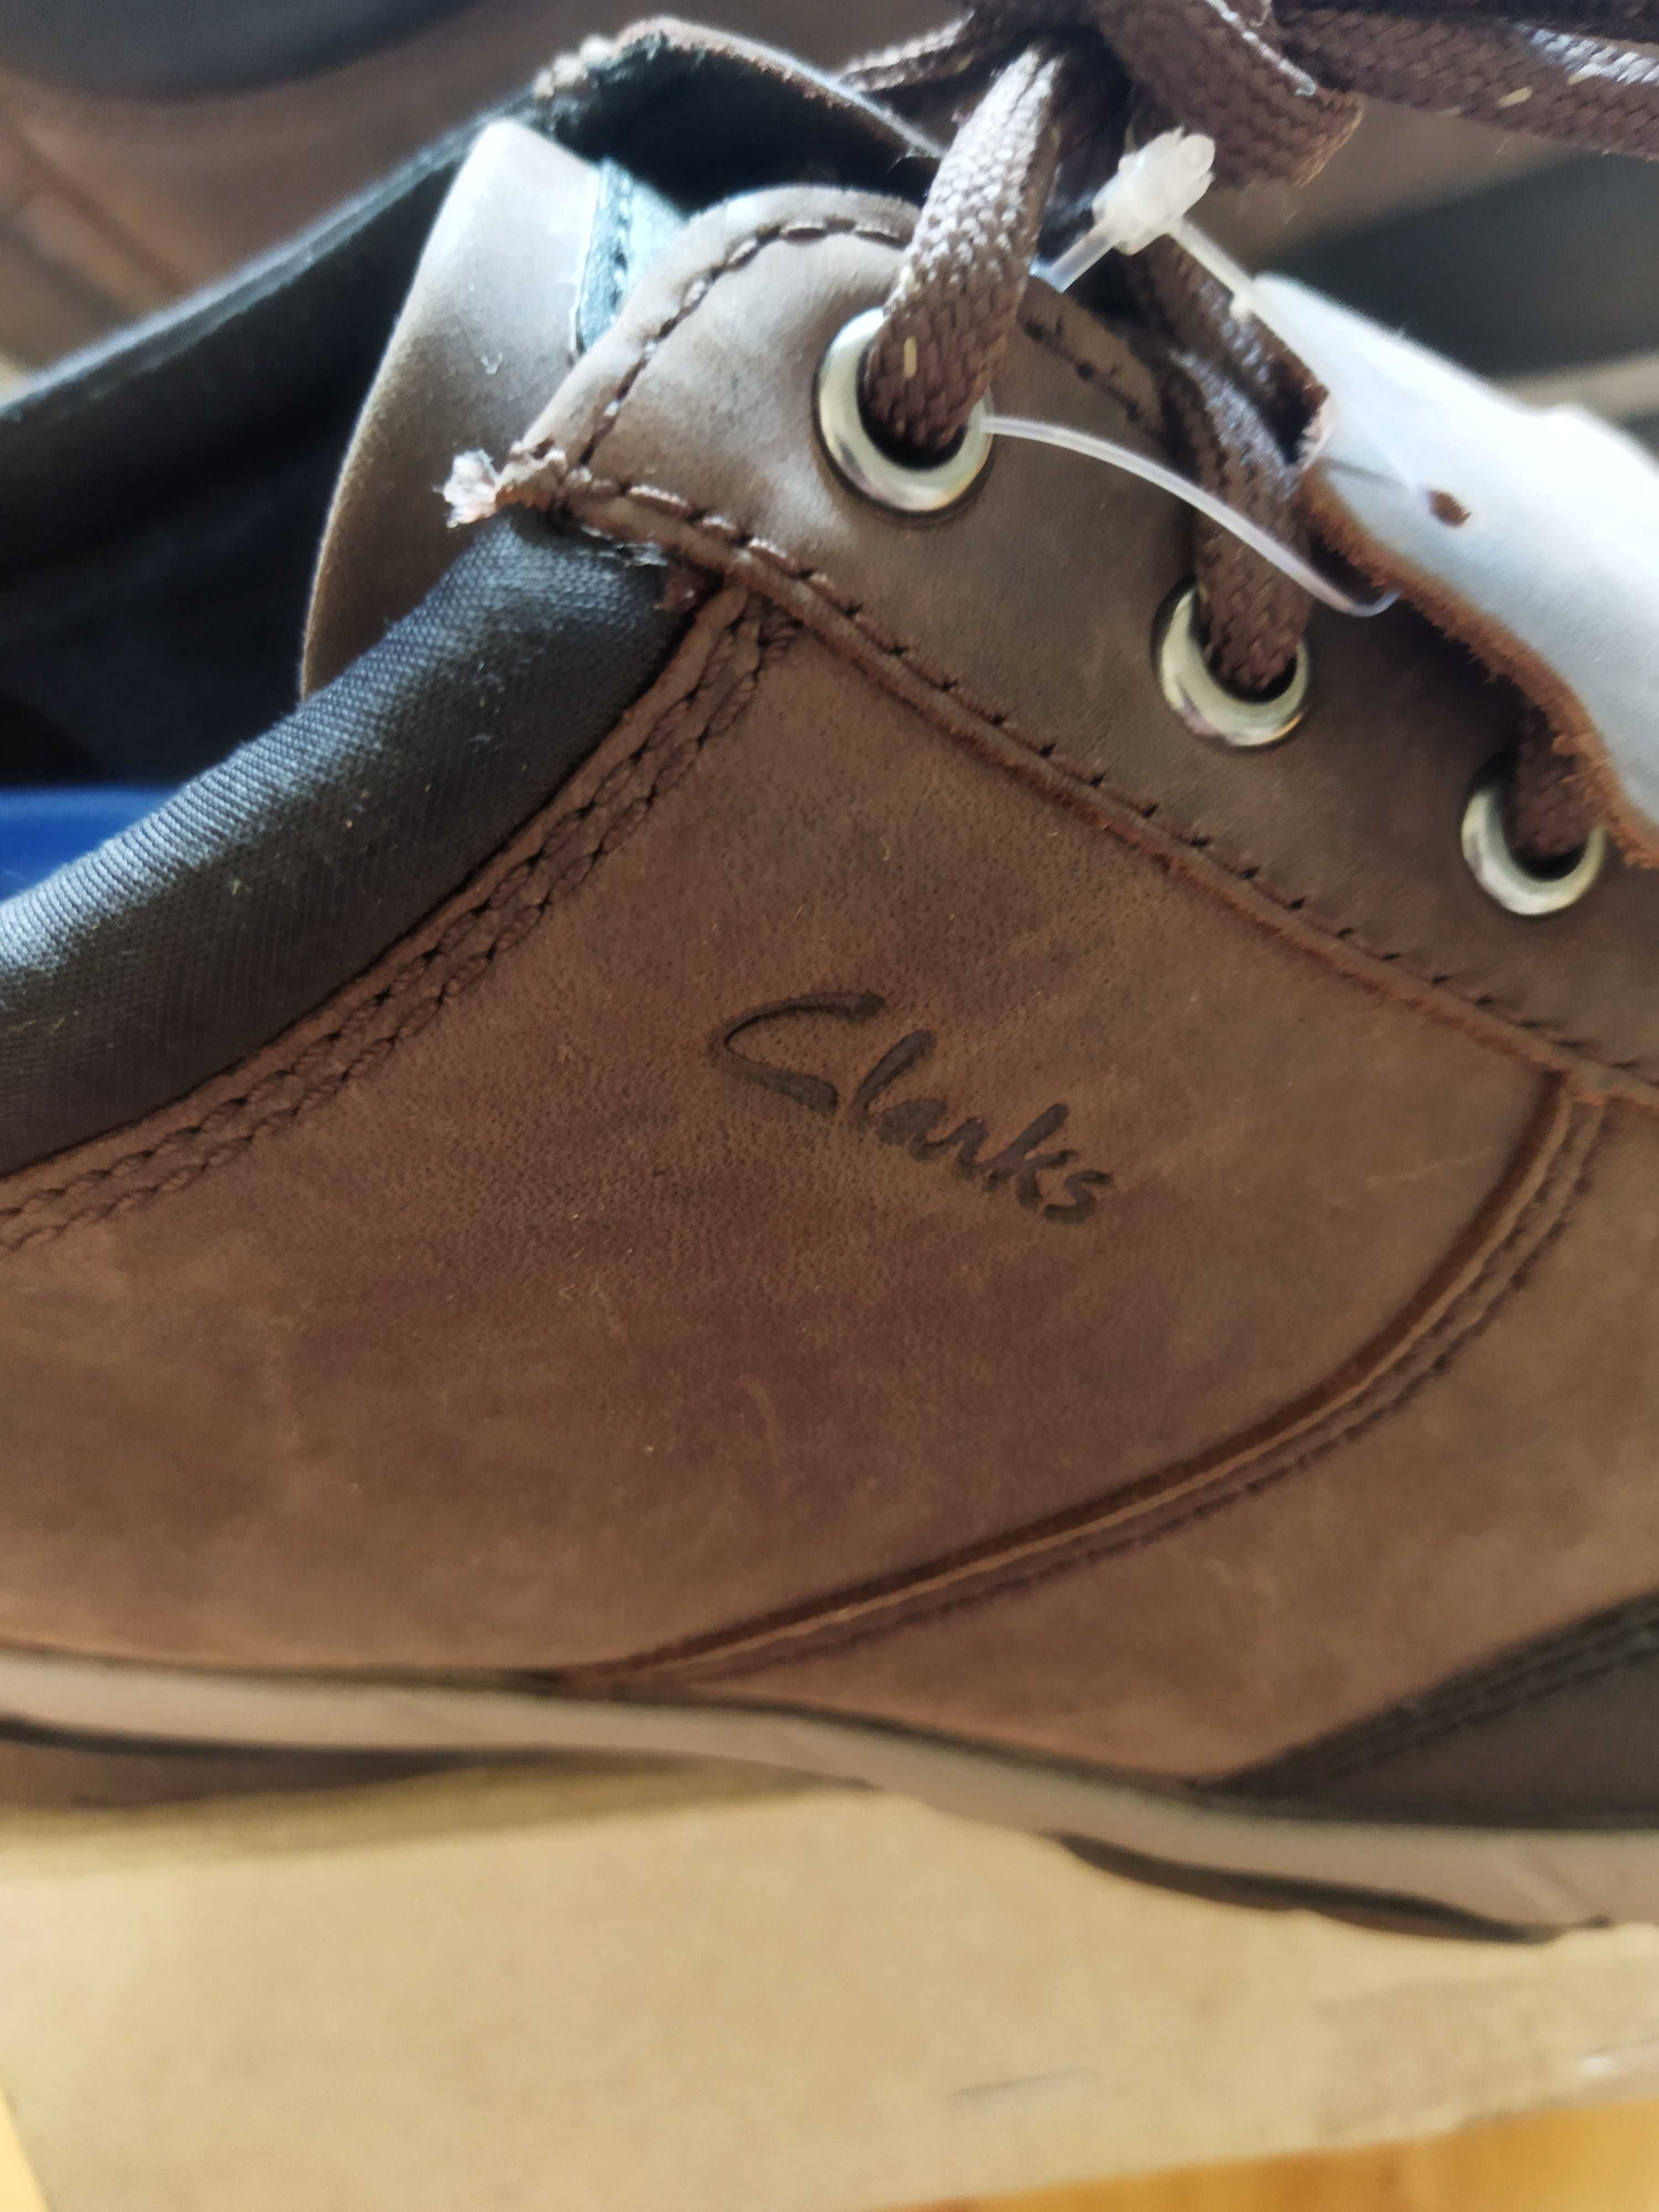 Туфли-ботинки Clarks (Великобритания),нубук,оригинал,новые,р-р 43